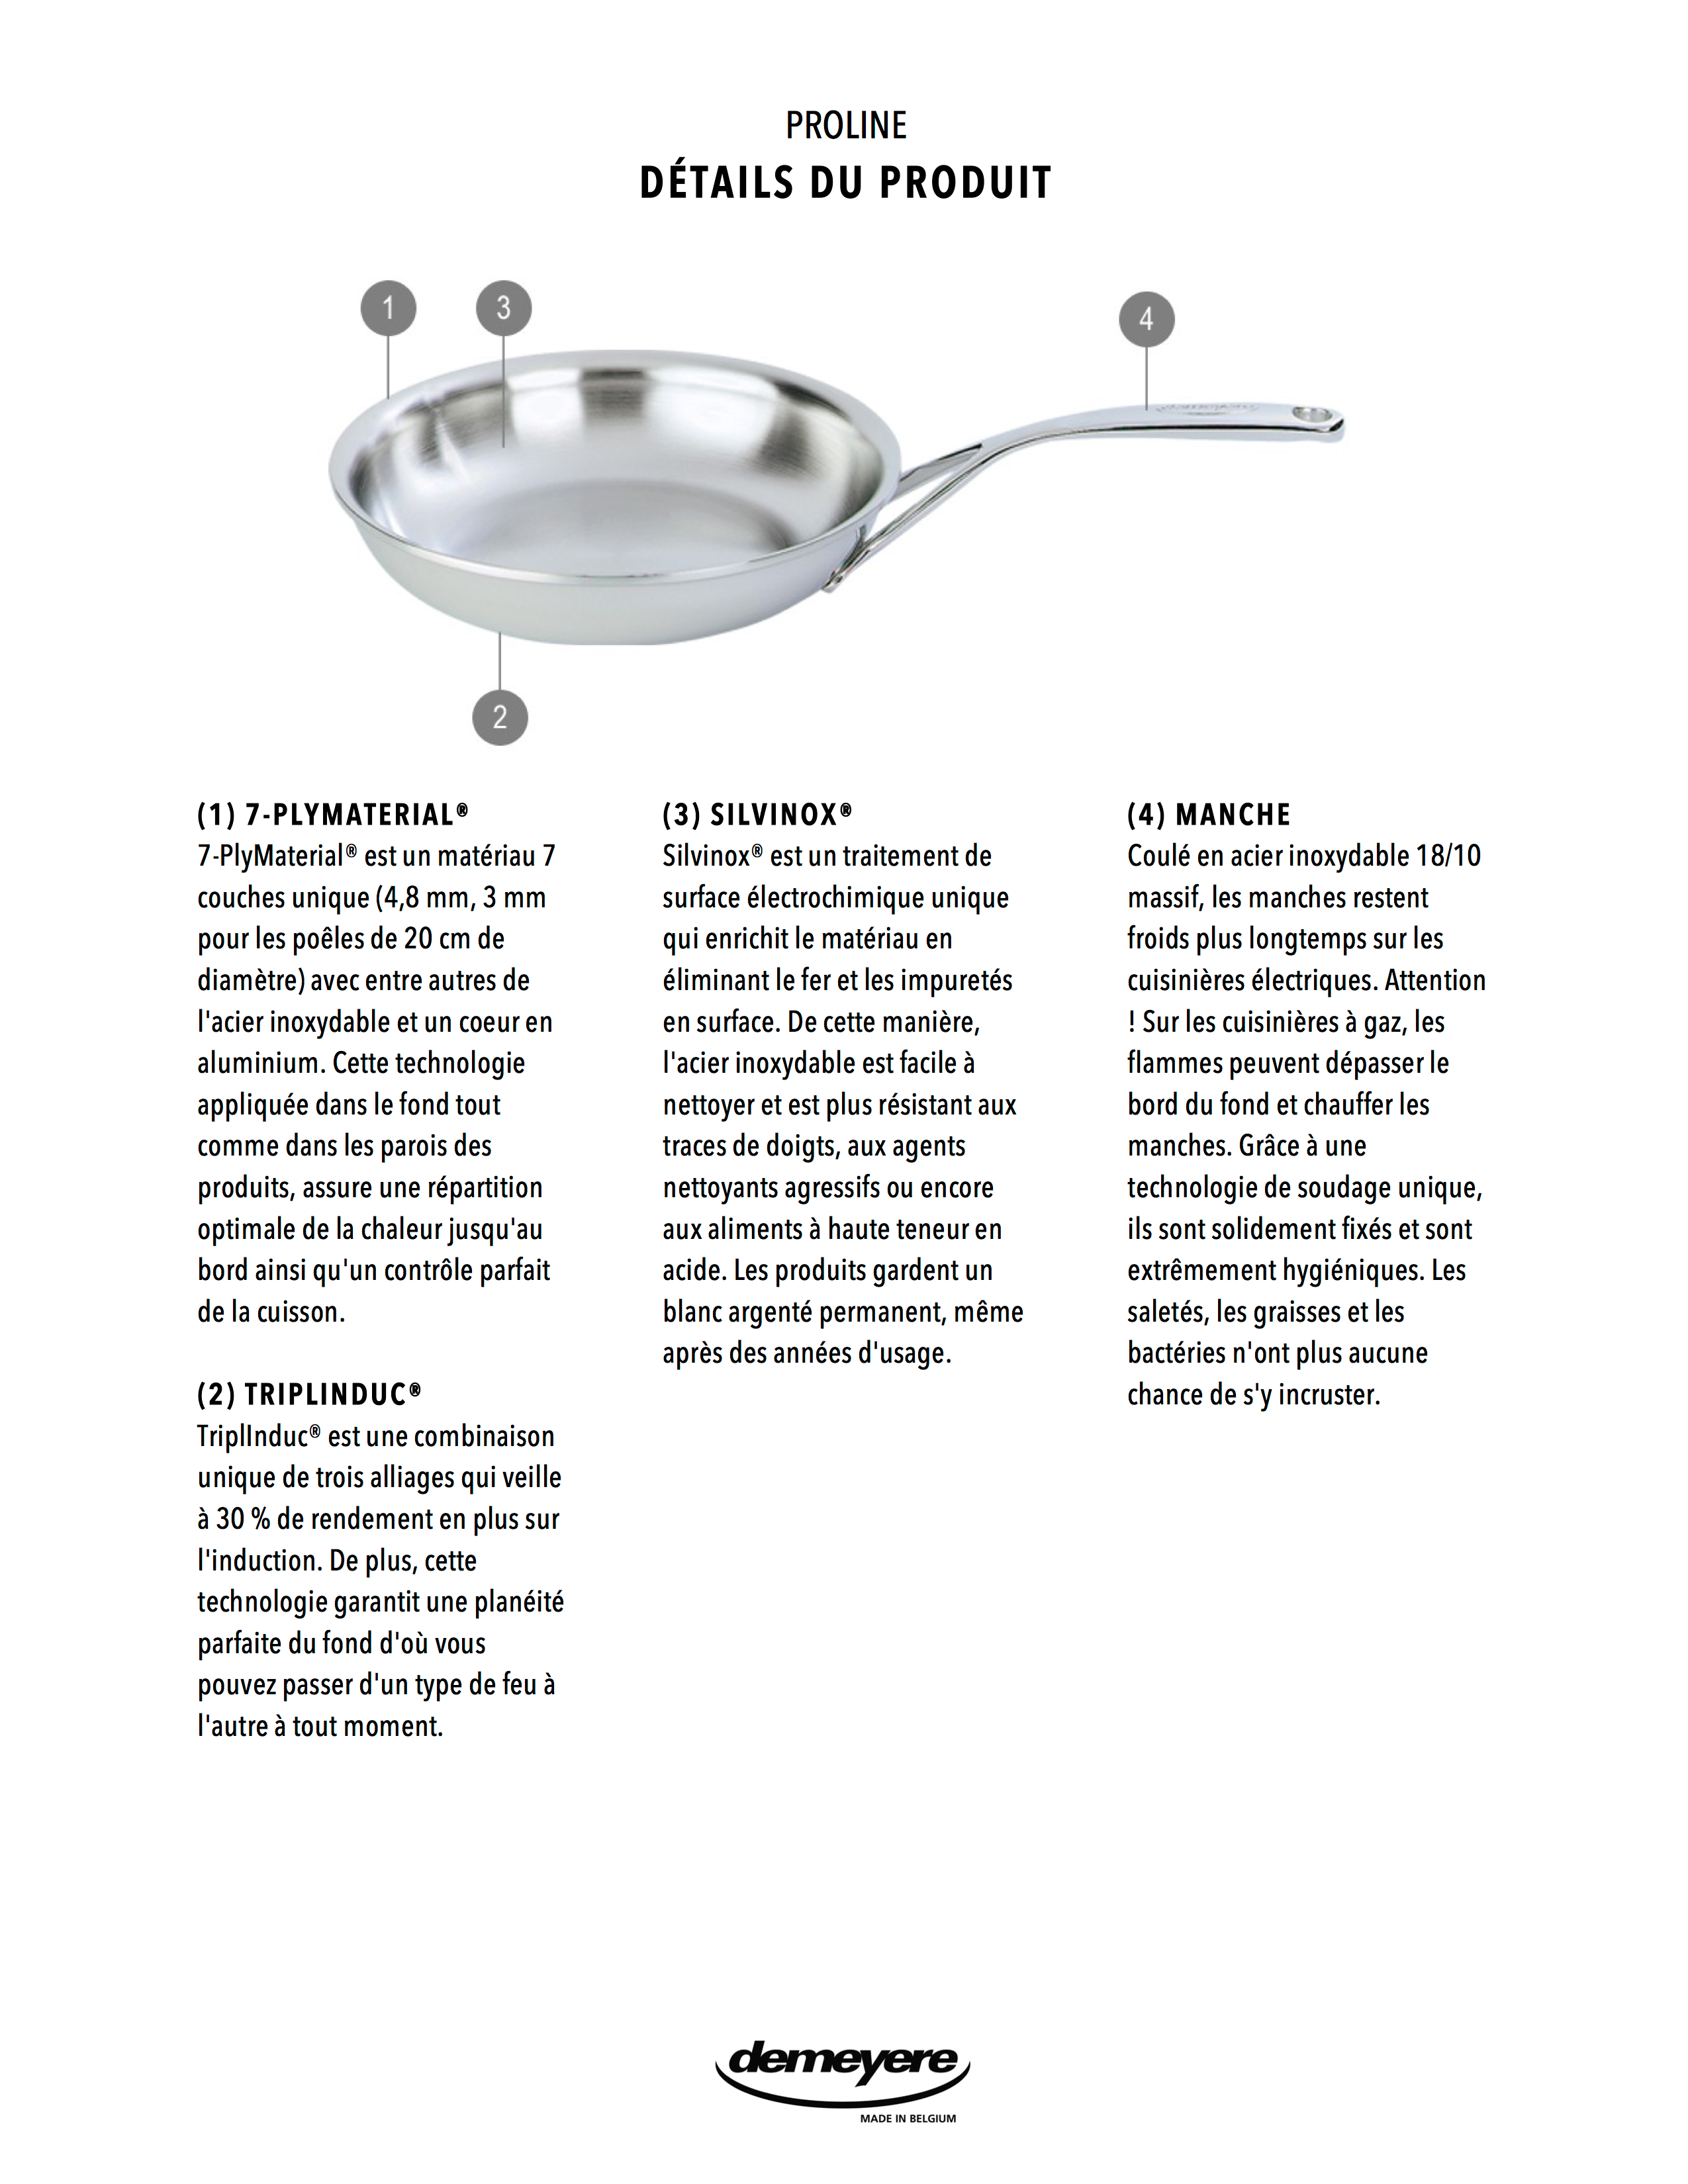 Demeyere Poêle Induction Alu Classico 3 Ceraforce - Poêle ceramique à frire  pour tous types de cuisinières dont induction - Poêle antiadhésive de